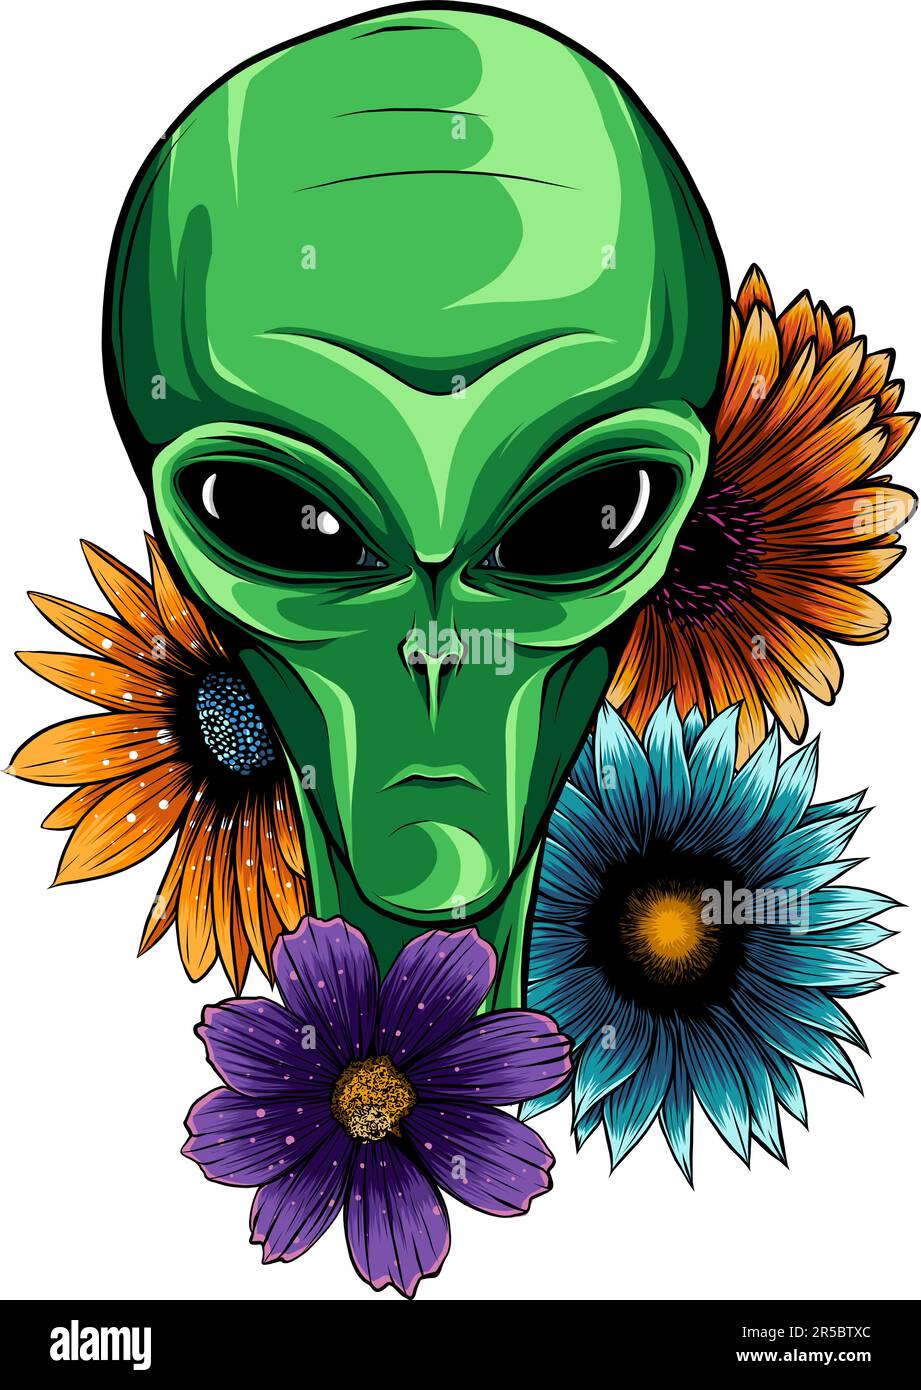 Illustrazione vettoriale di Alien Face Flowers con fiore Illustrazione Vettoriale